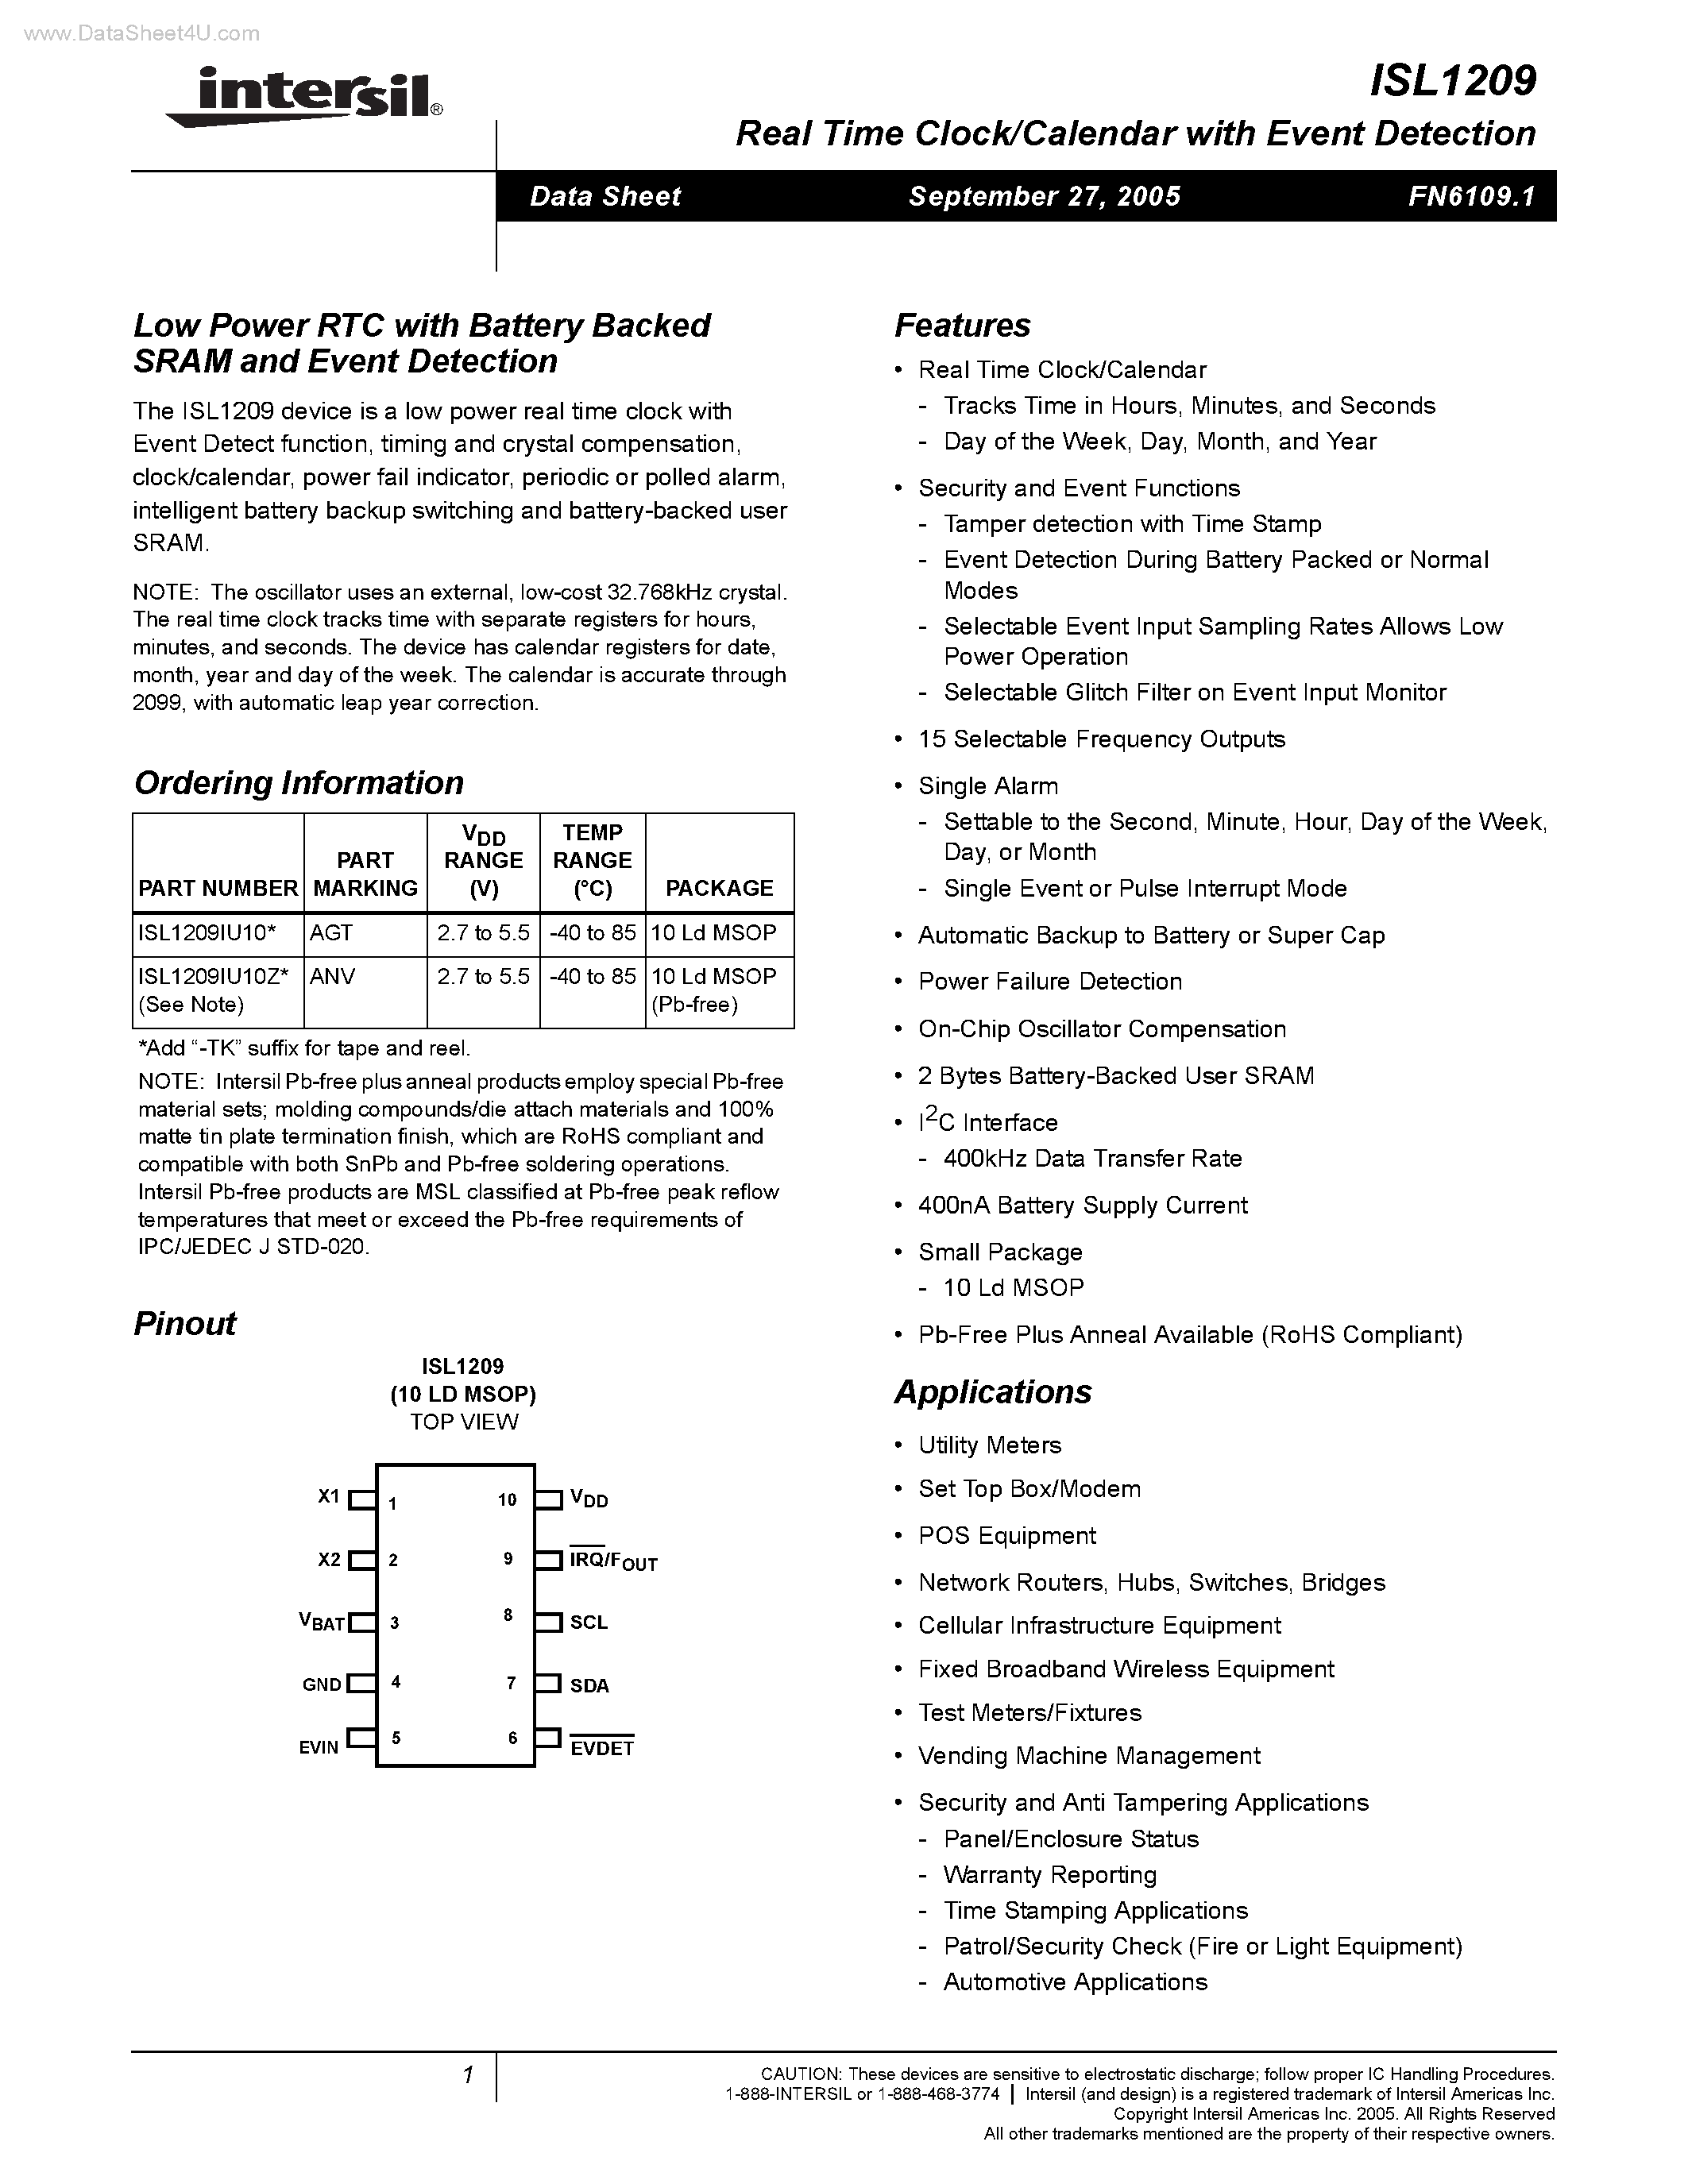 Даташит ISL1209 - Low Power RTC страница 1